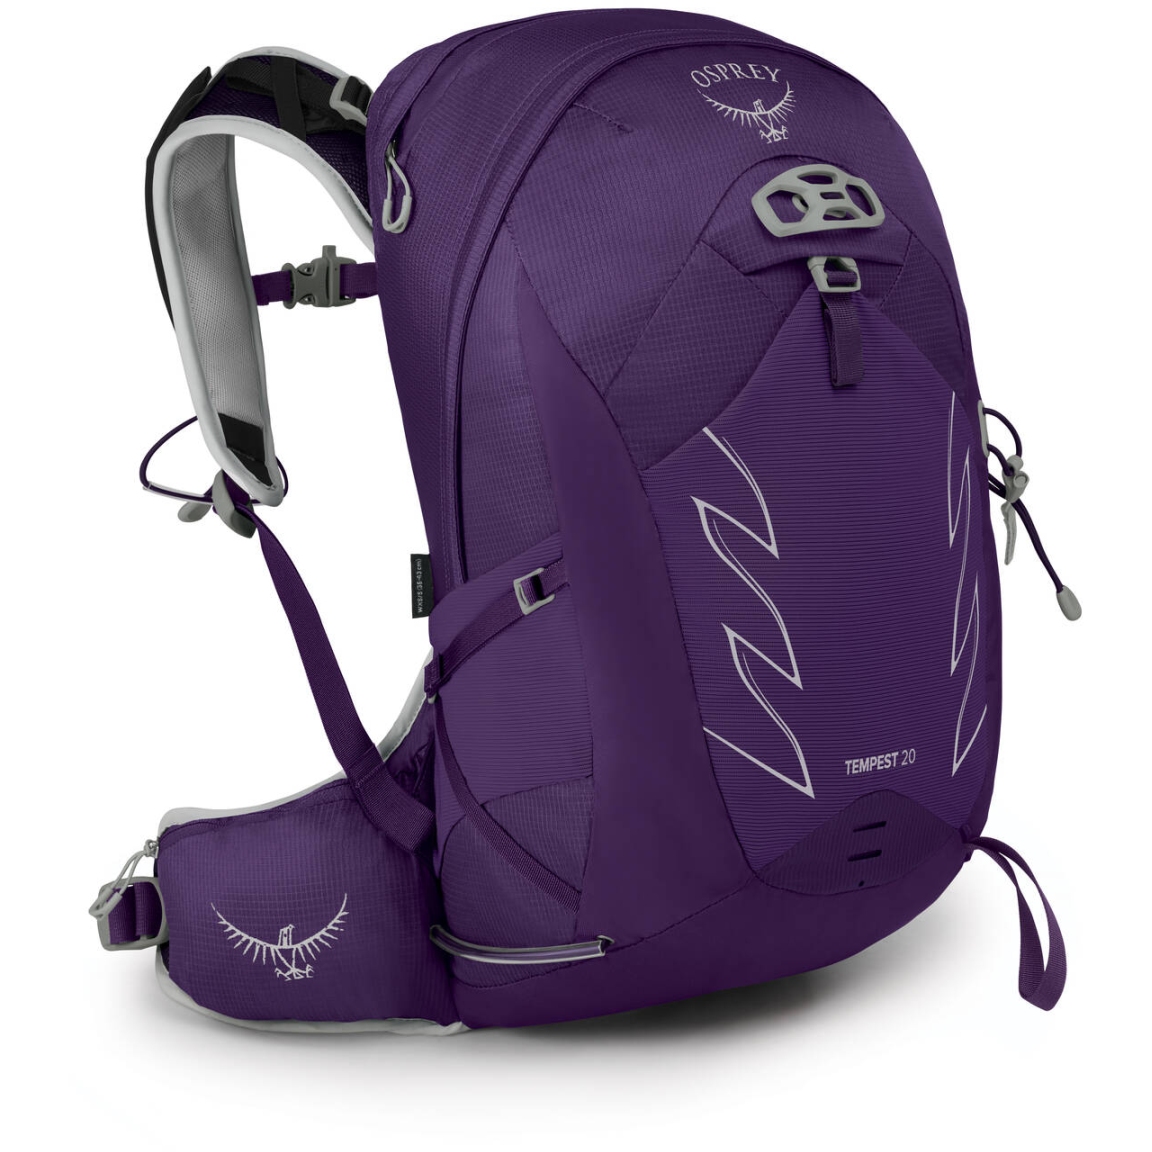 Produktbild von Osprey Tempest 20 Rucksack Damen - Violac Purple